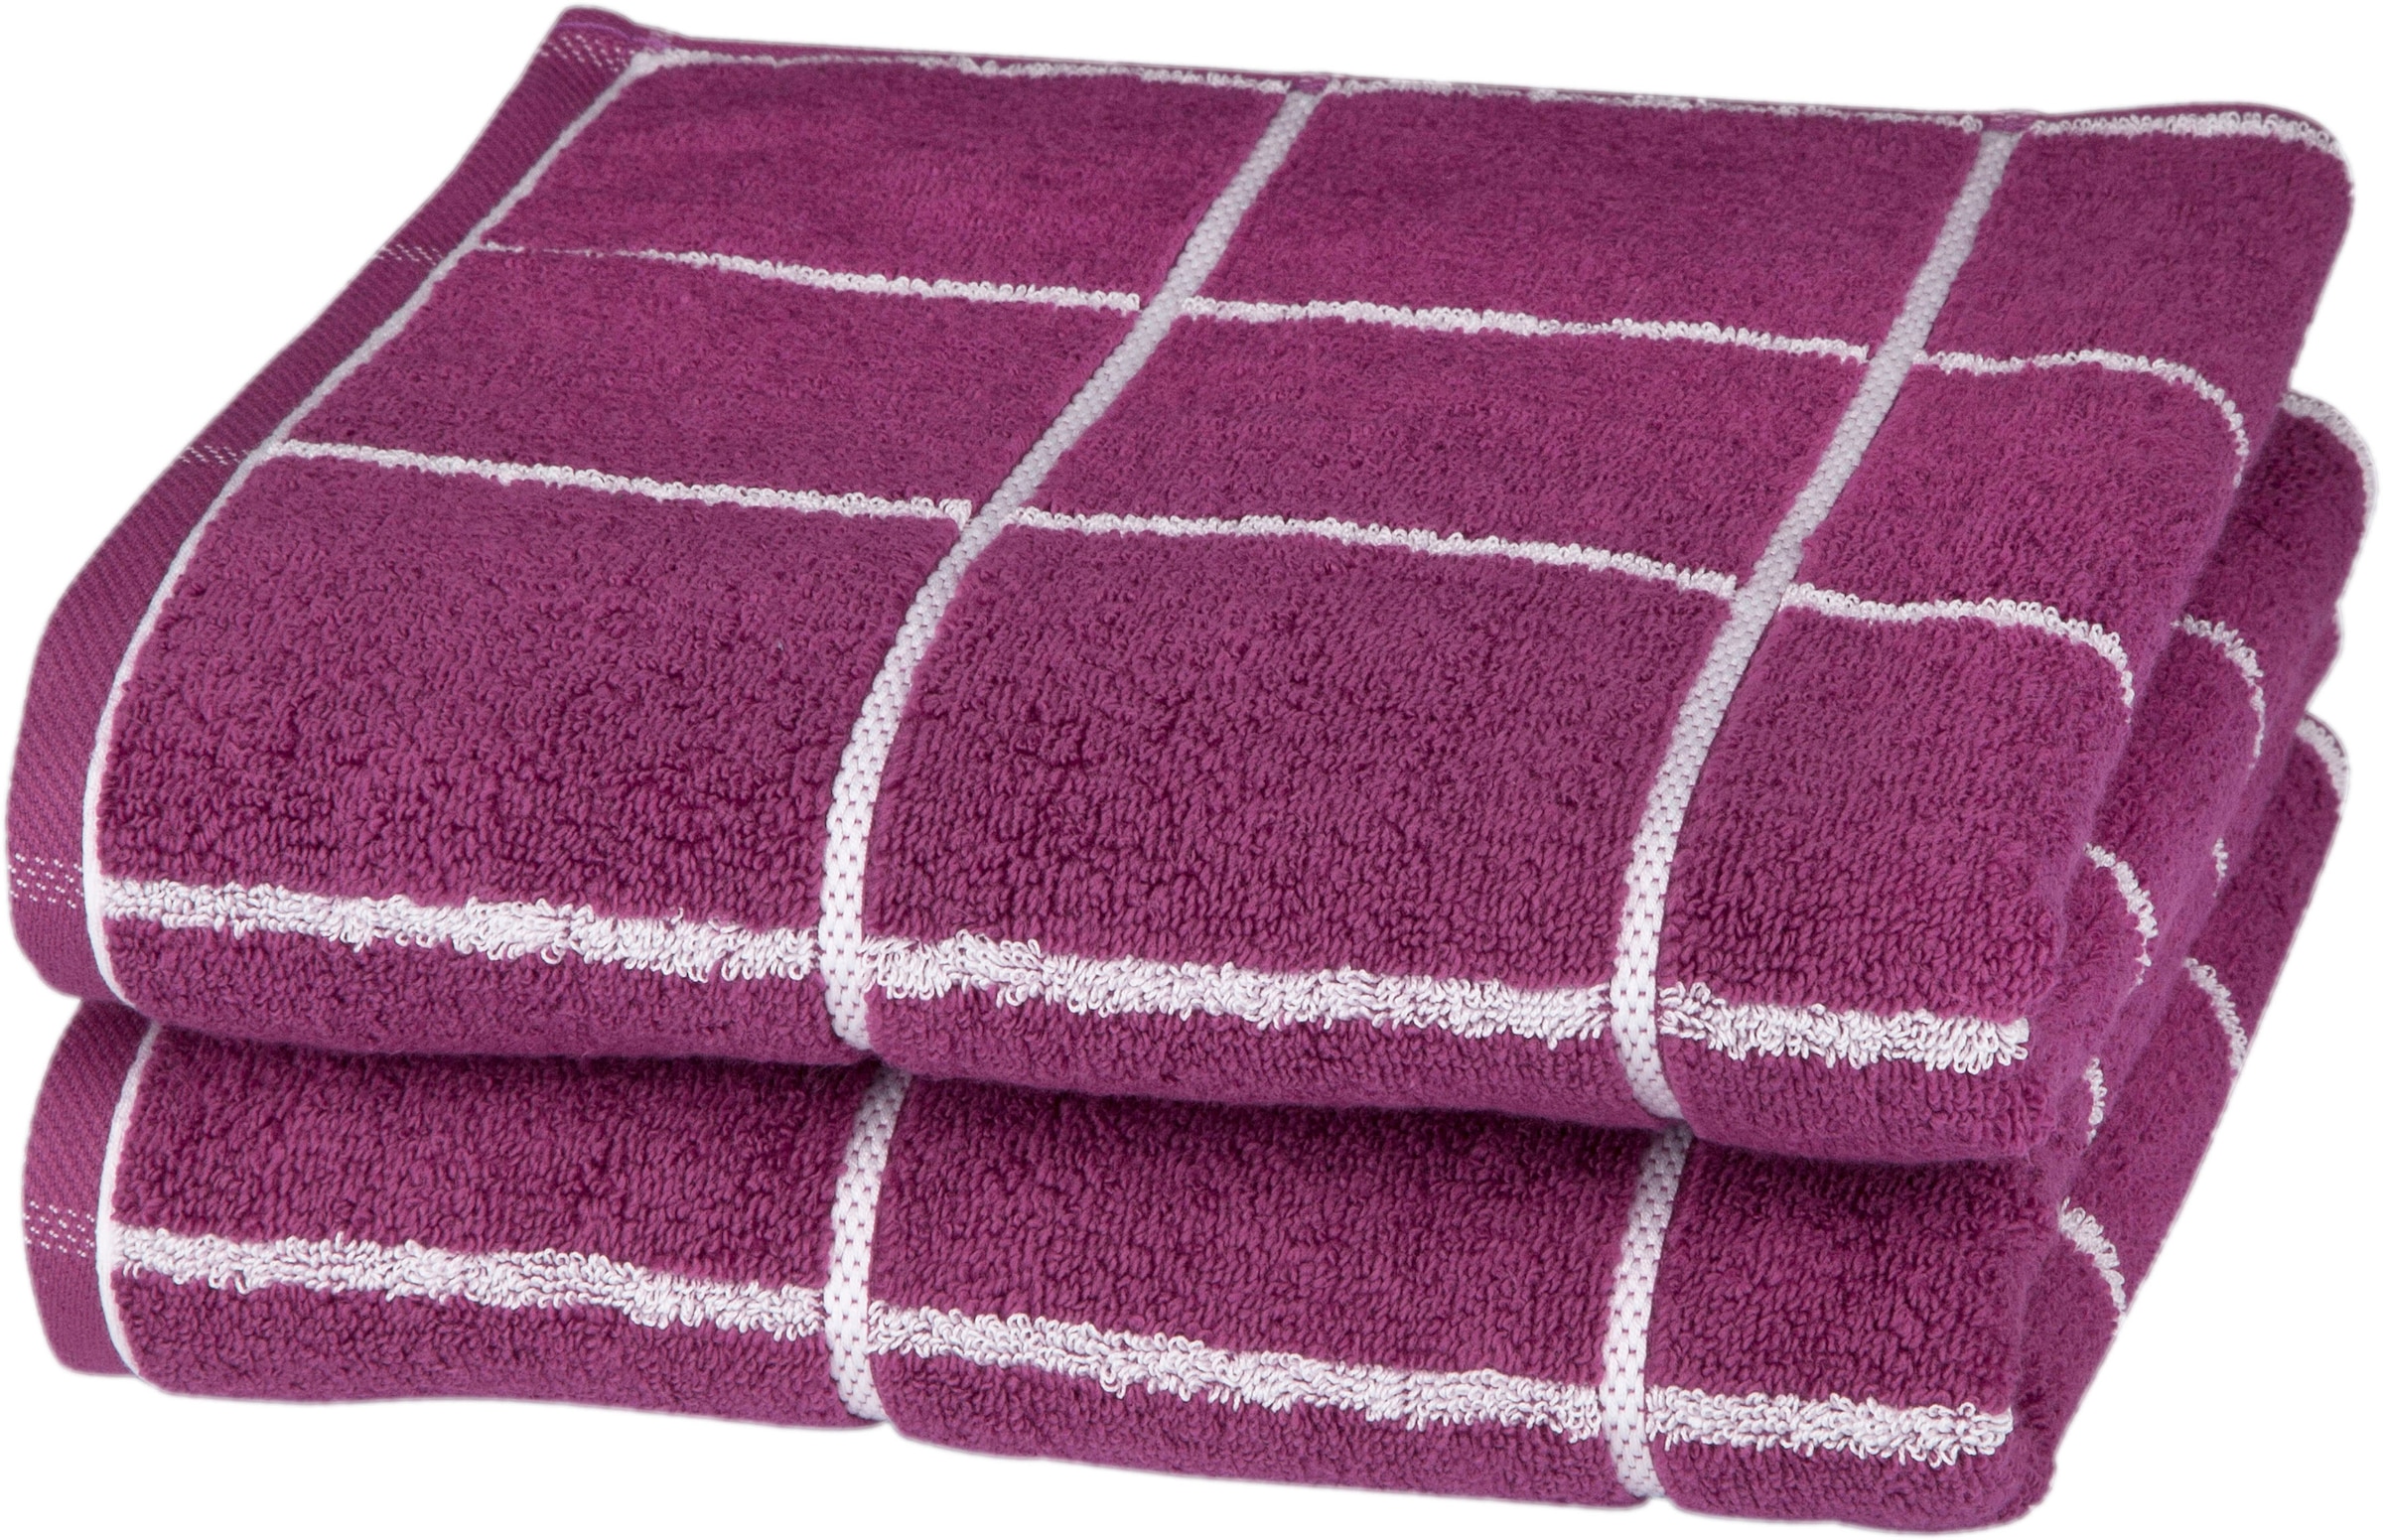 Handtücher in Pink auf Teilzahlung kaufen ❤ UNIVERSAL